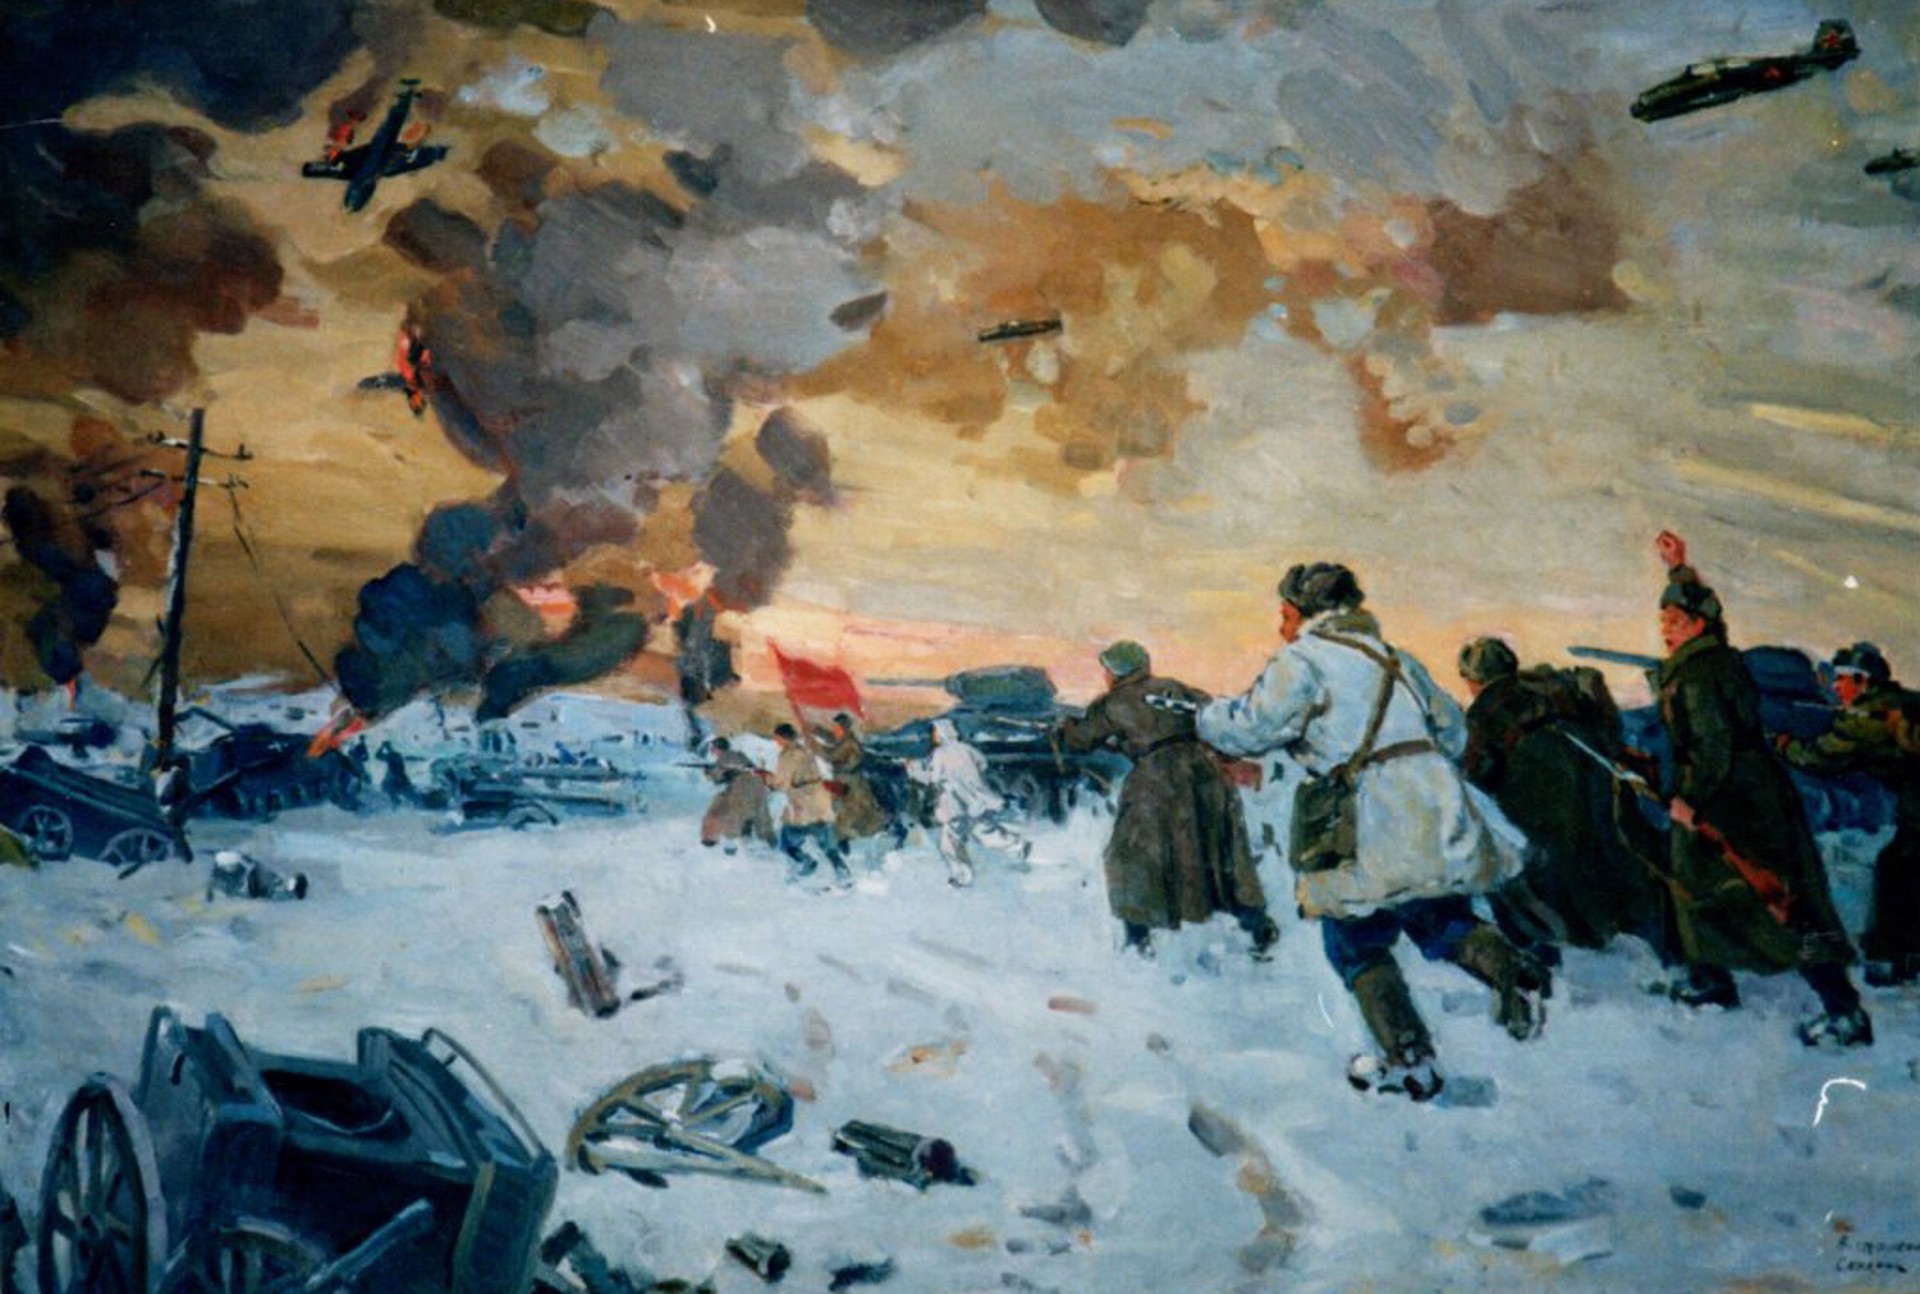 Winter, 1943 by Vladislav Skralet